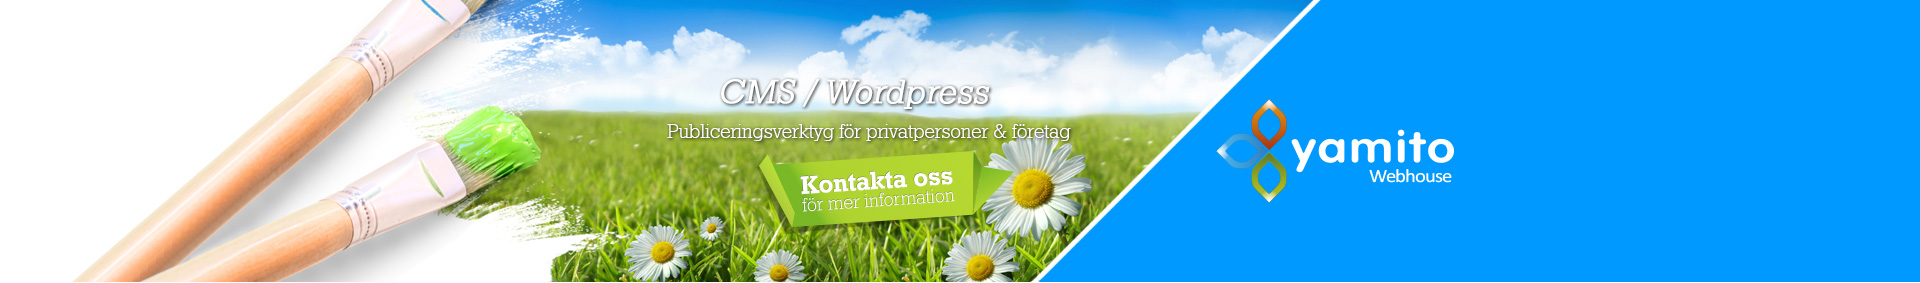 CMS / Wordpress, Enkel innehållshantering för din hemsida!